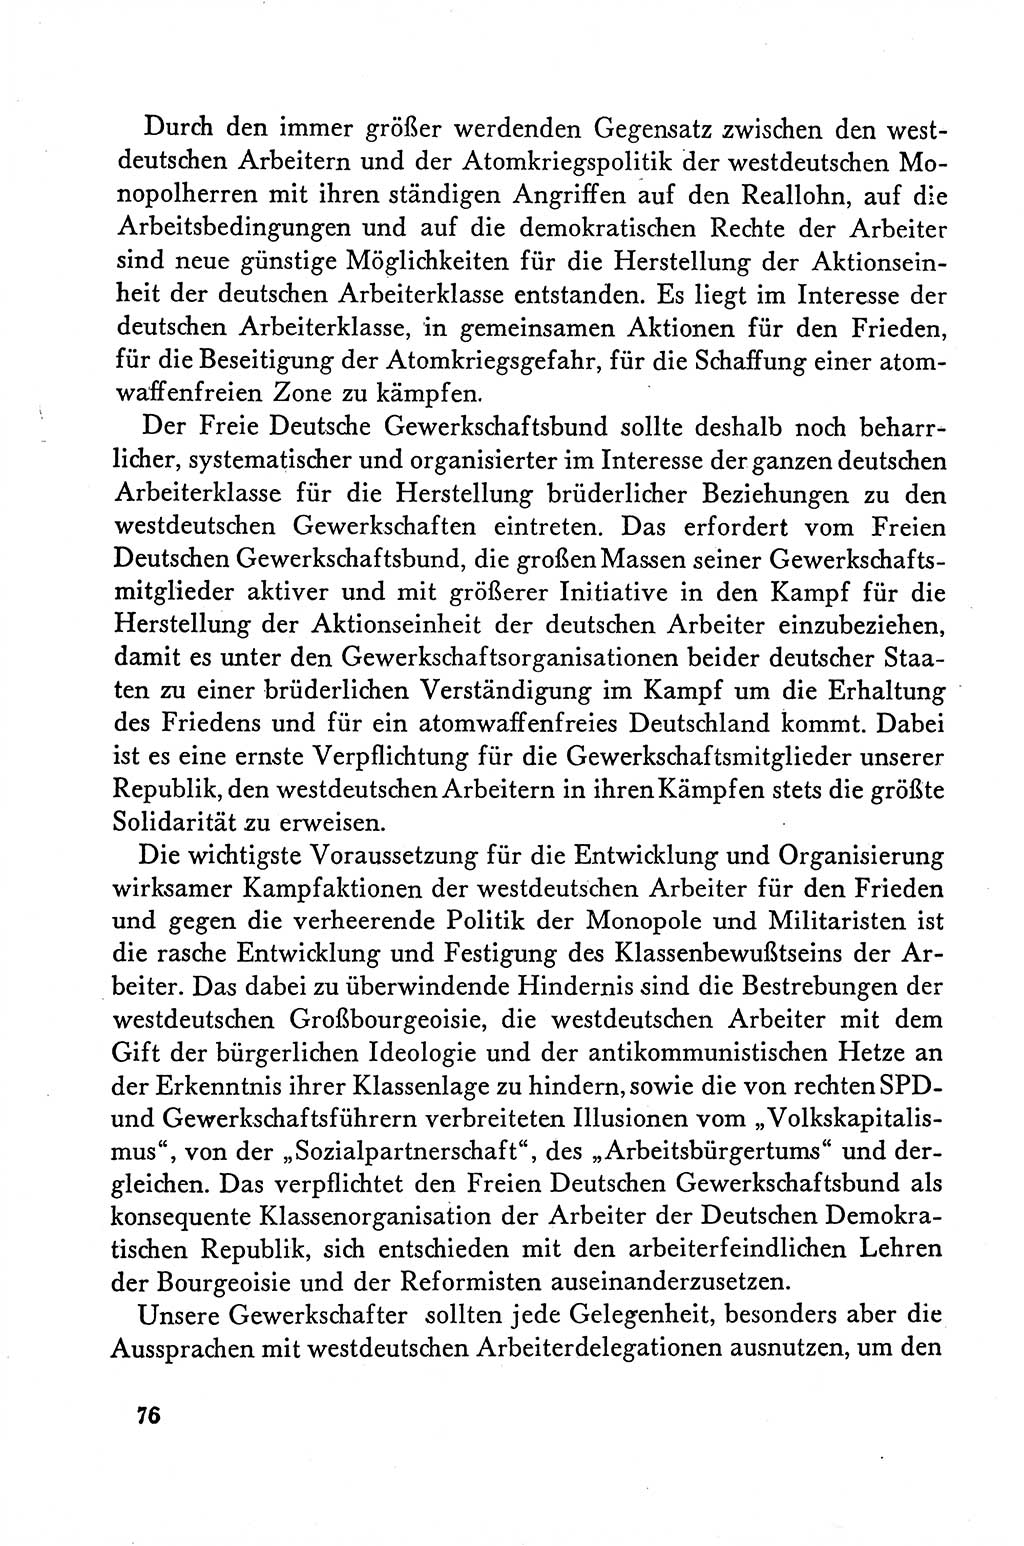 Dokumente der Sozialistischen Einheitspartei Deutschlands (SED) [Deutsche Demokratische Republik (DDR)] 1958-1959, Seite 76 (Dok. SED DDR 1958-1959, S. 76)